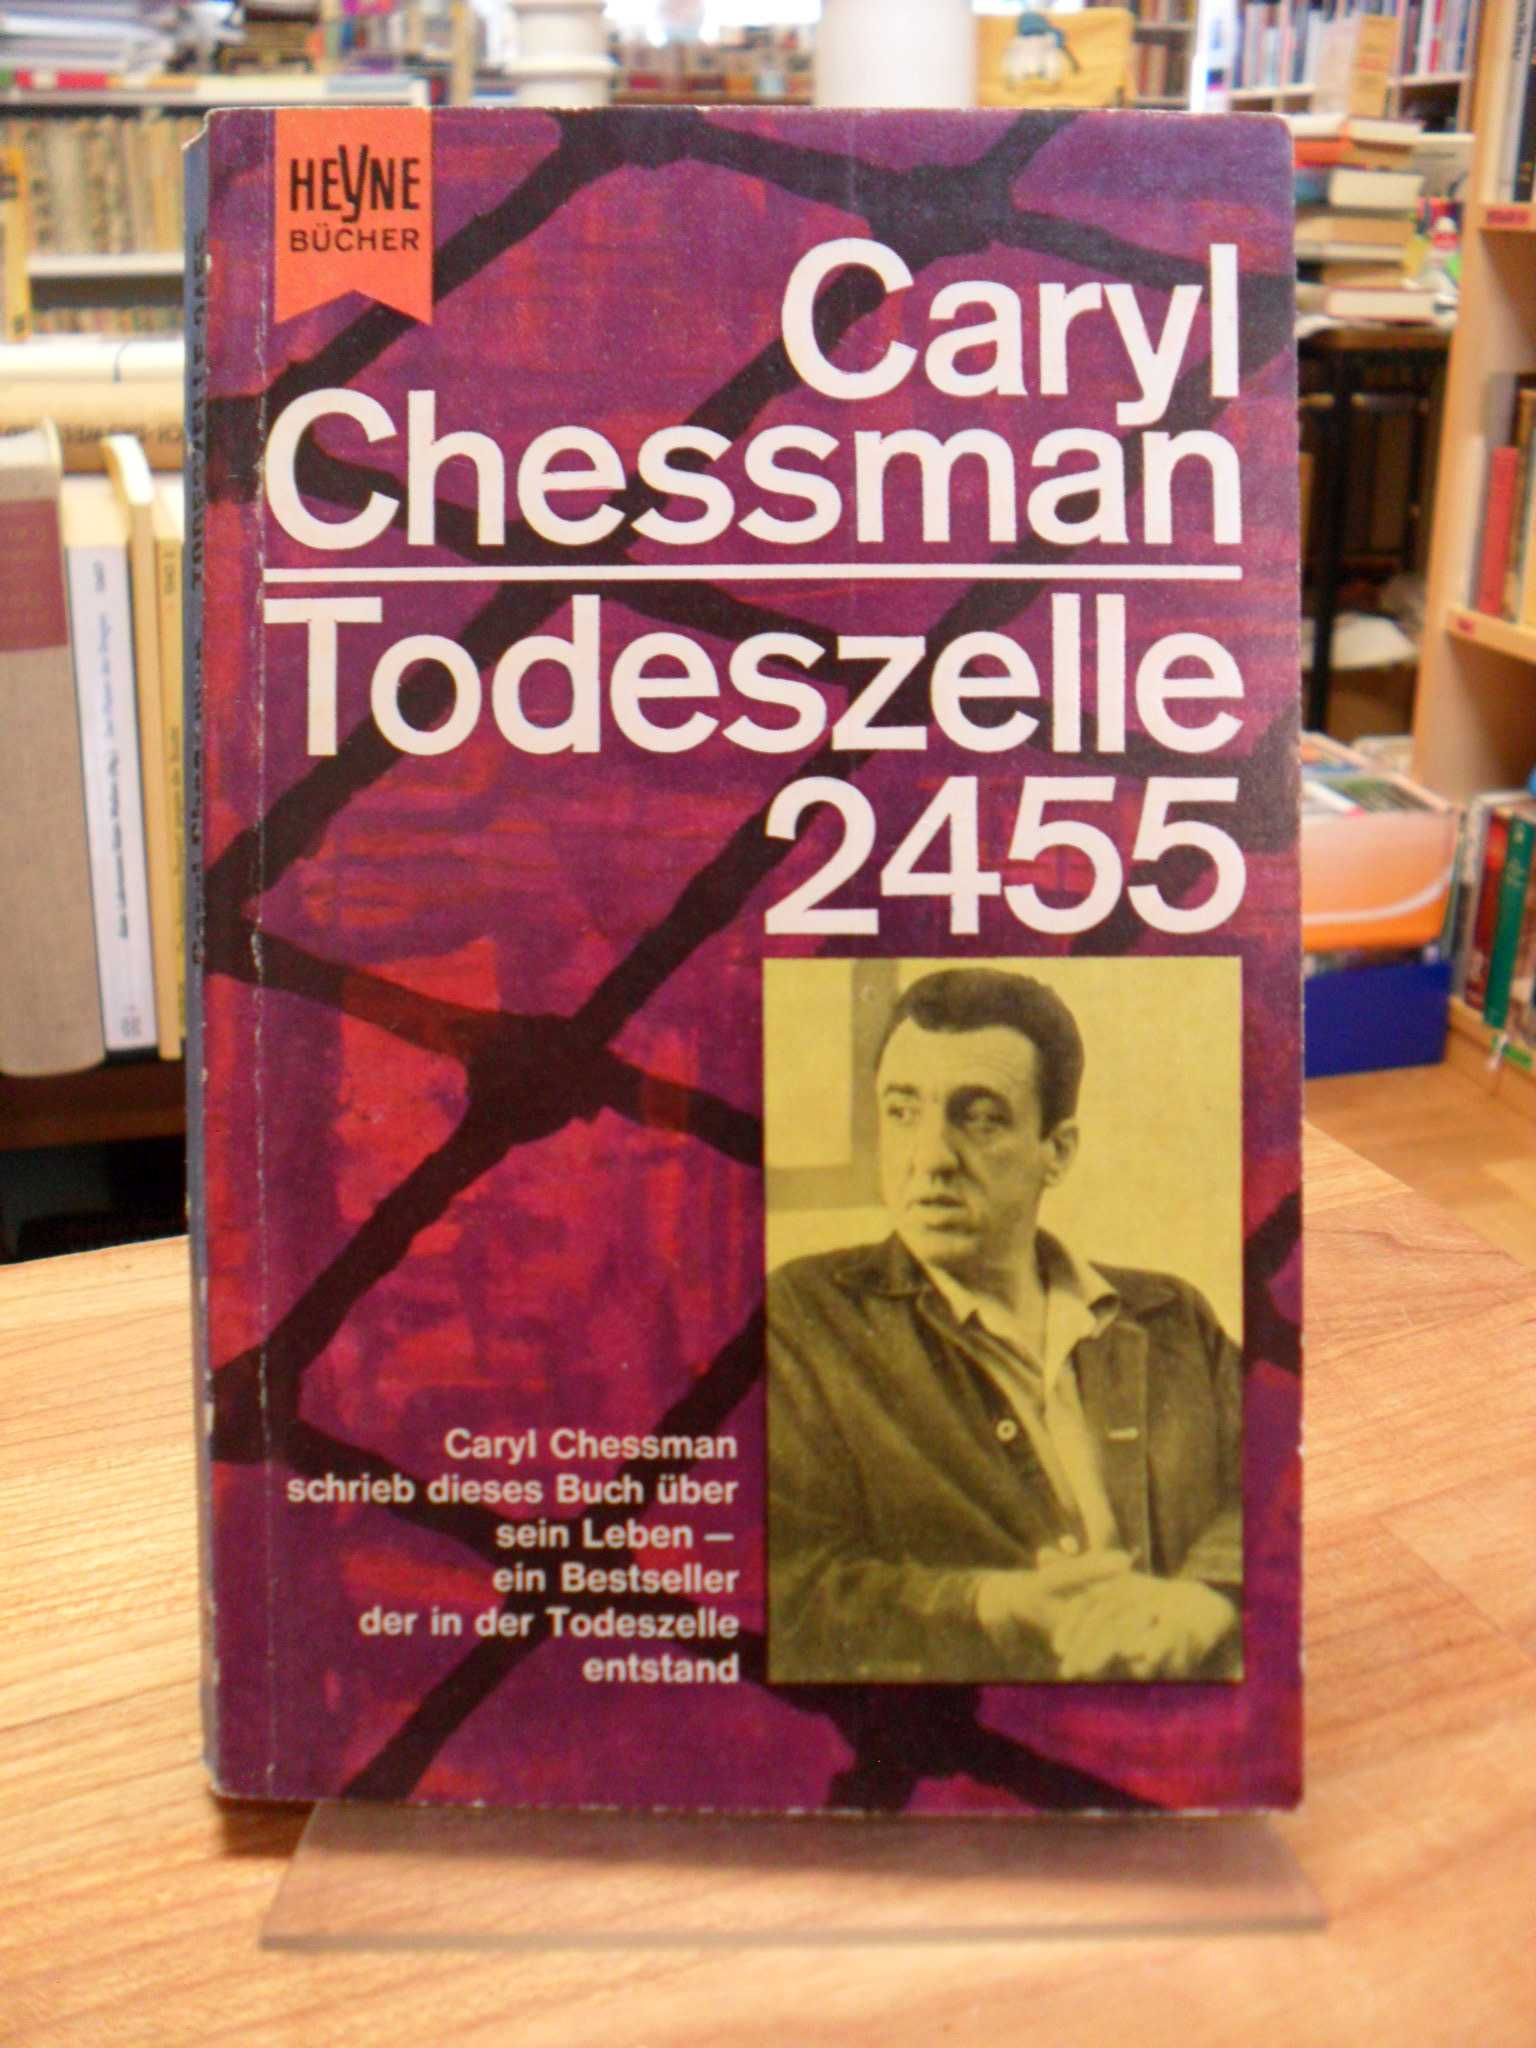 Chessman, Todeszelle 2455 – Ein Bericht,